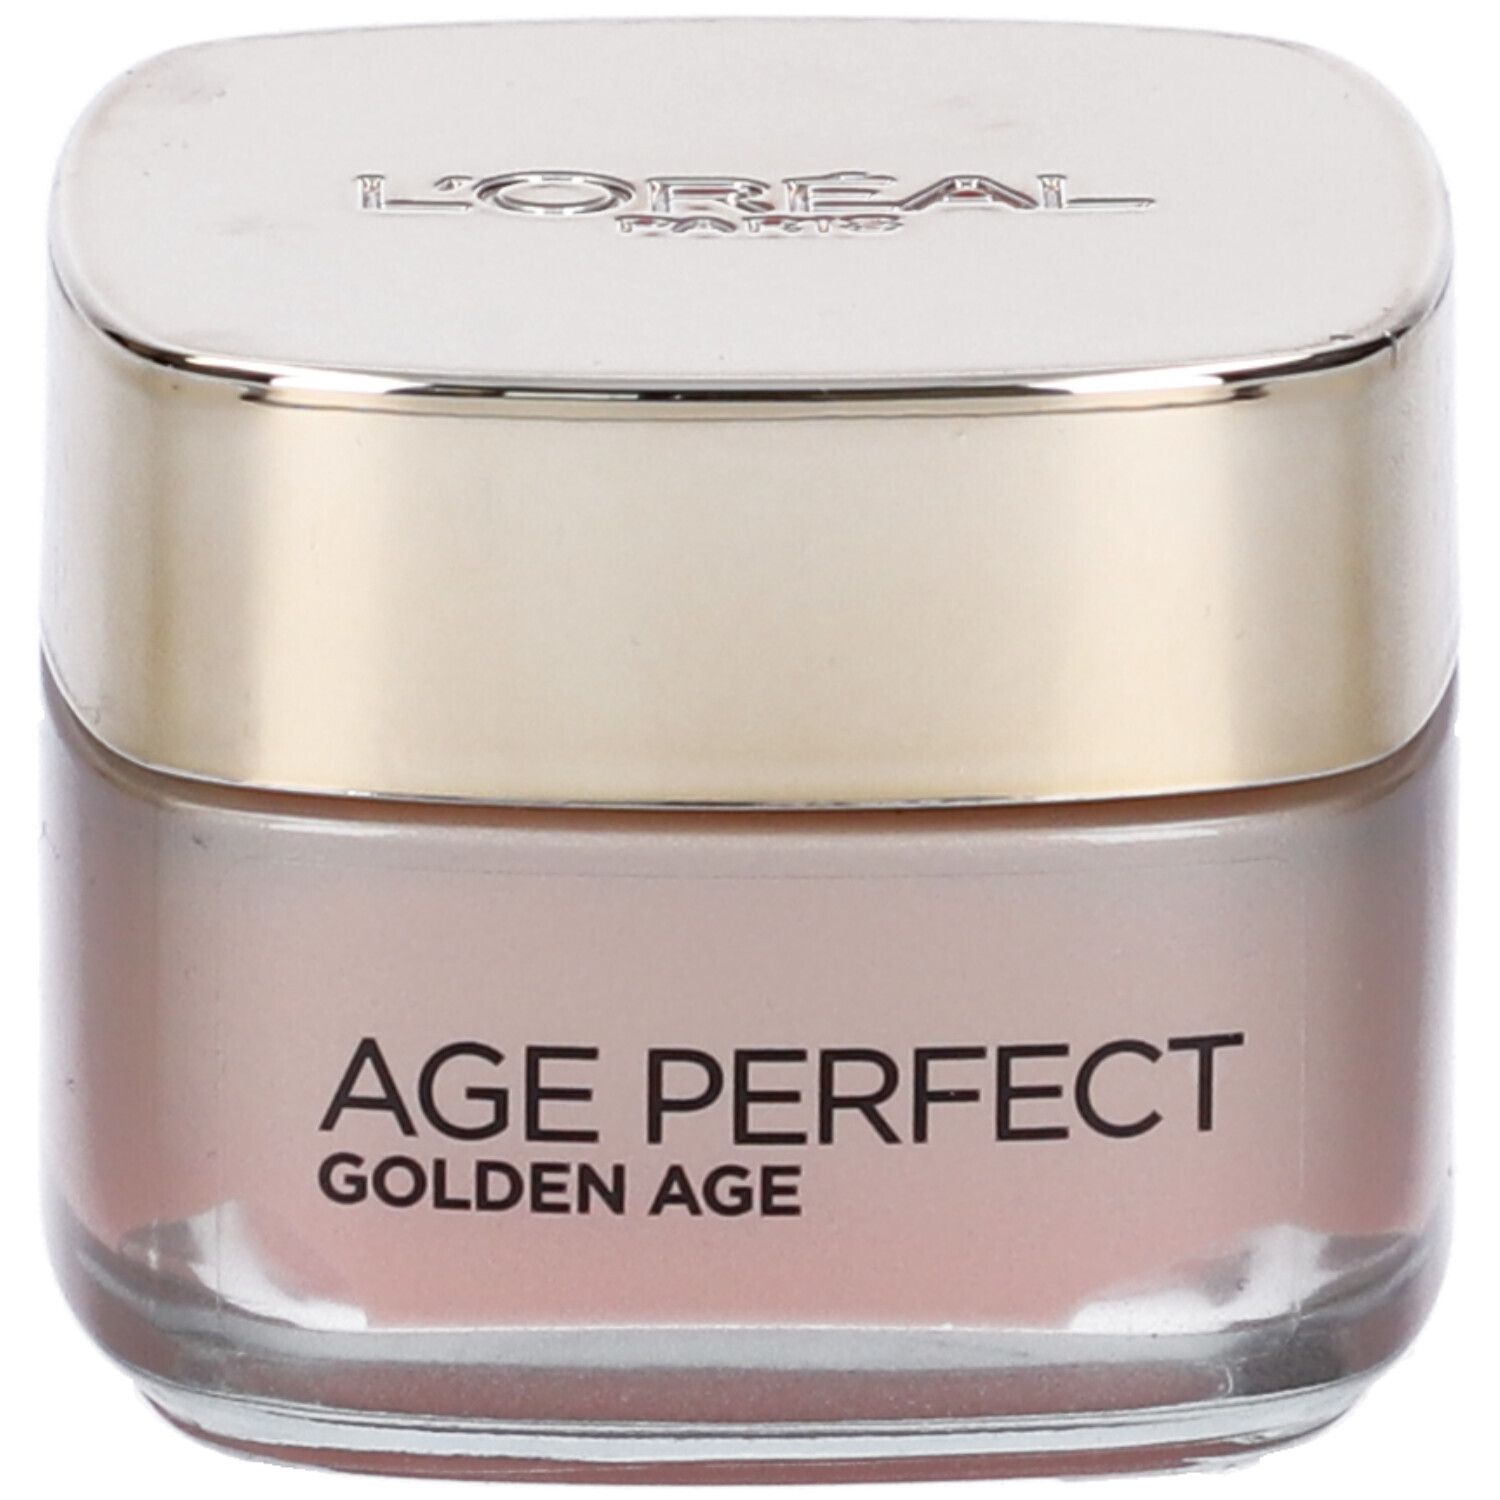 L'Oréal Paris Crema Viso Giorno Age Perfect Golden Age, Trattamento Fortificante, Adatto a Pelli Mature, 50 ml